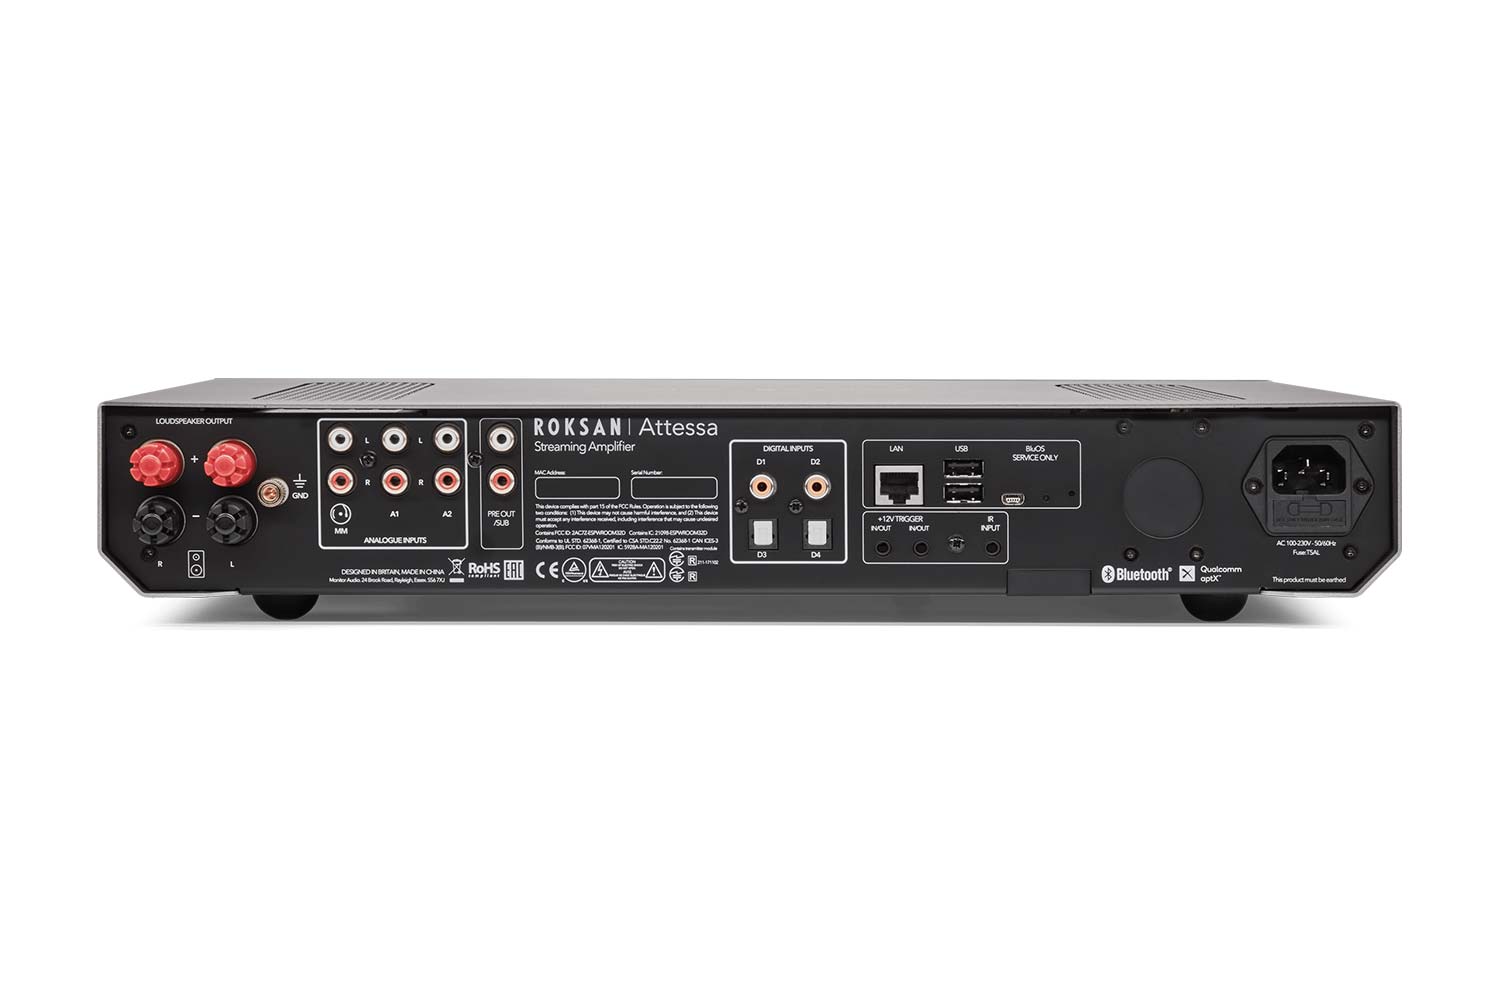 Roksan + Monitor Audio Brit-Pack 300 - Verstärker und Lautsprecher Set - schwarz/weiss